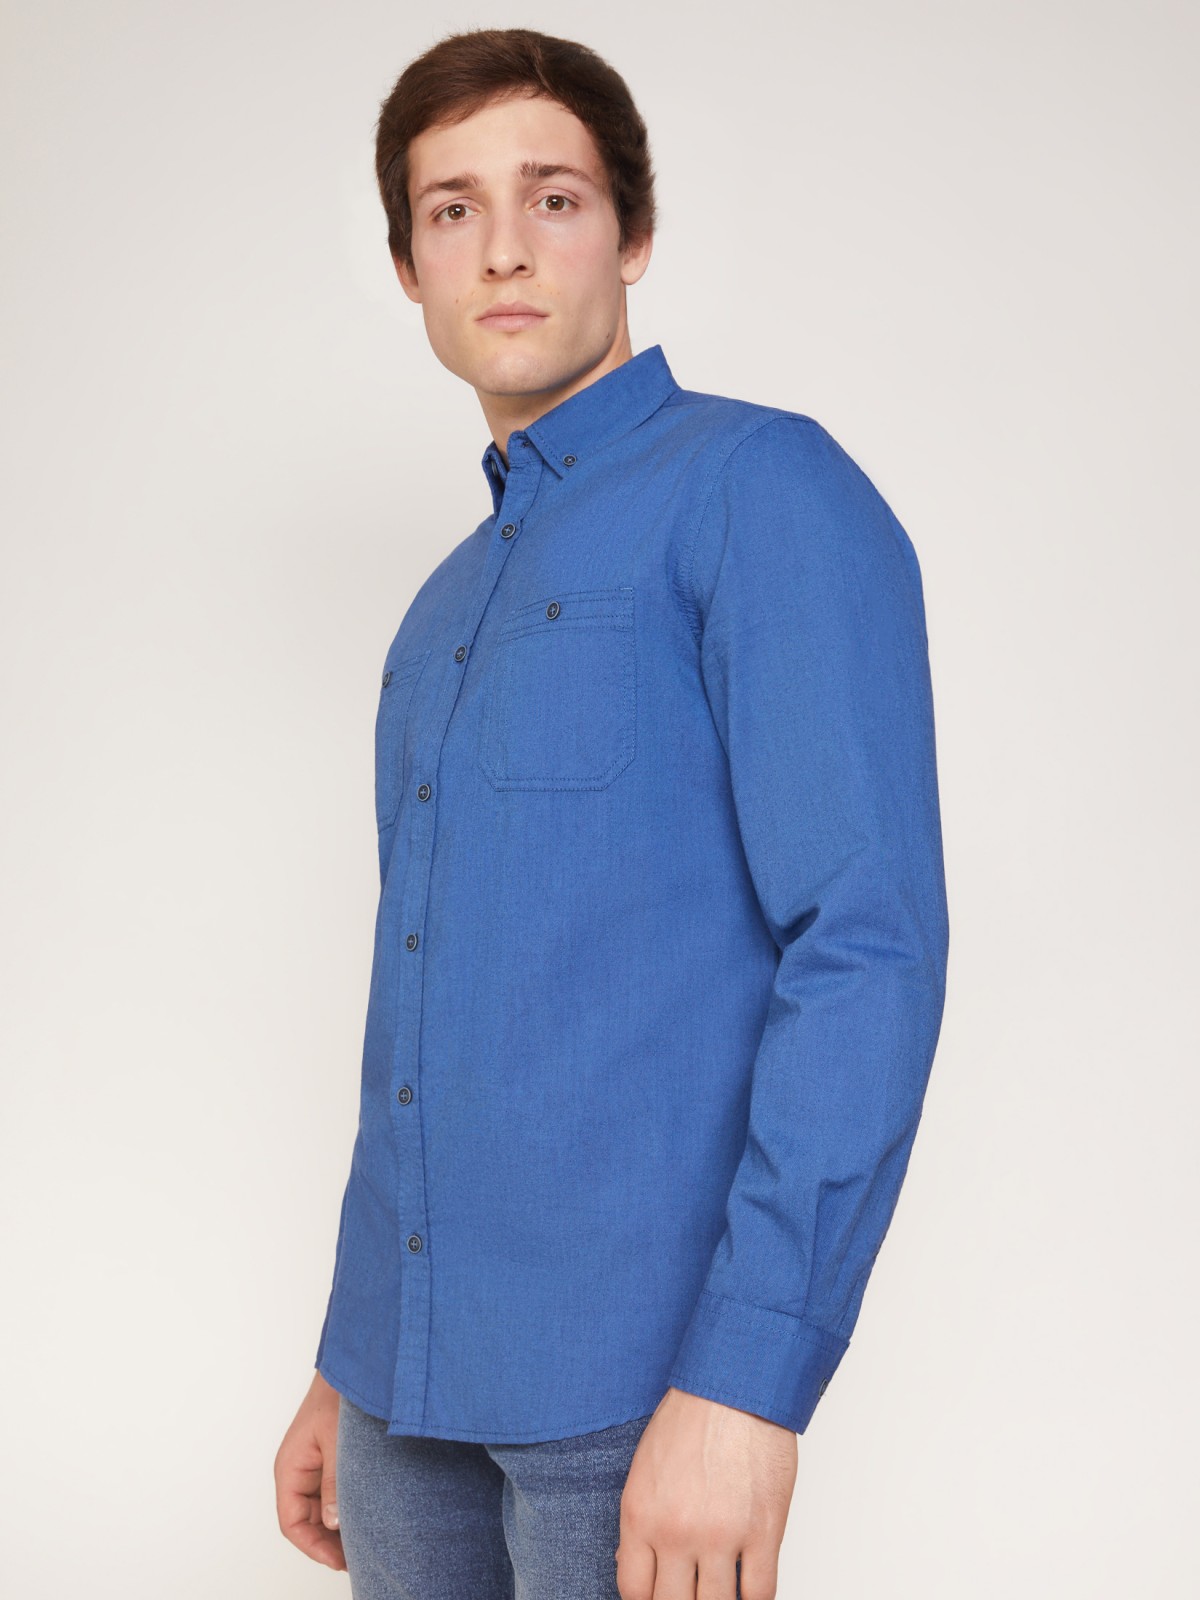 Хлопковая рубашка полуприлегающего силуэта zolla 011312191023, цвет голубой, размер S - фото 4